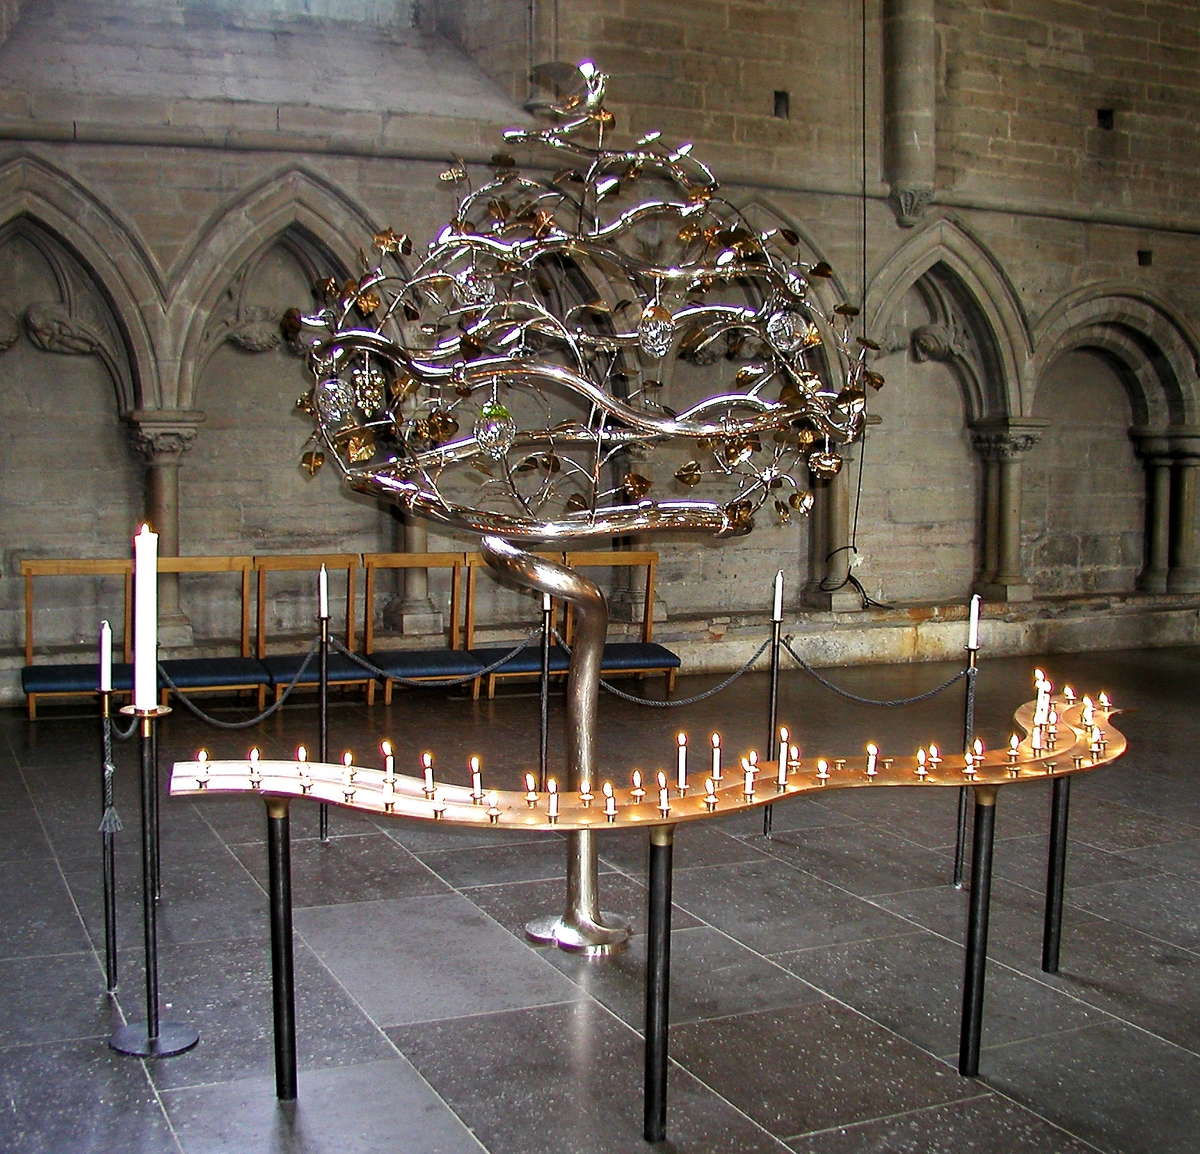 Livets träd, en skulptur i silver, guld och glas av konstnären Carl Gustav Jahnsson, fullbordad av silversmeden Jan Ostwald och arkitekten Torbjörn Vogt. Skulpturen finns i domkyrkan.